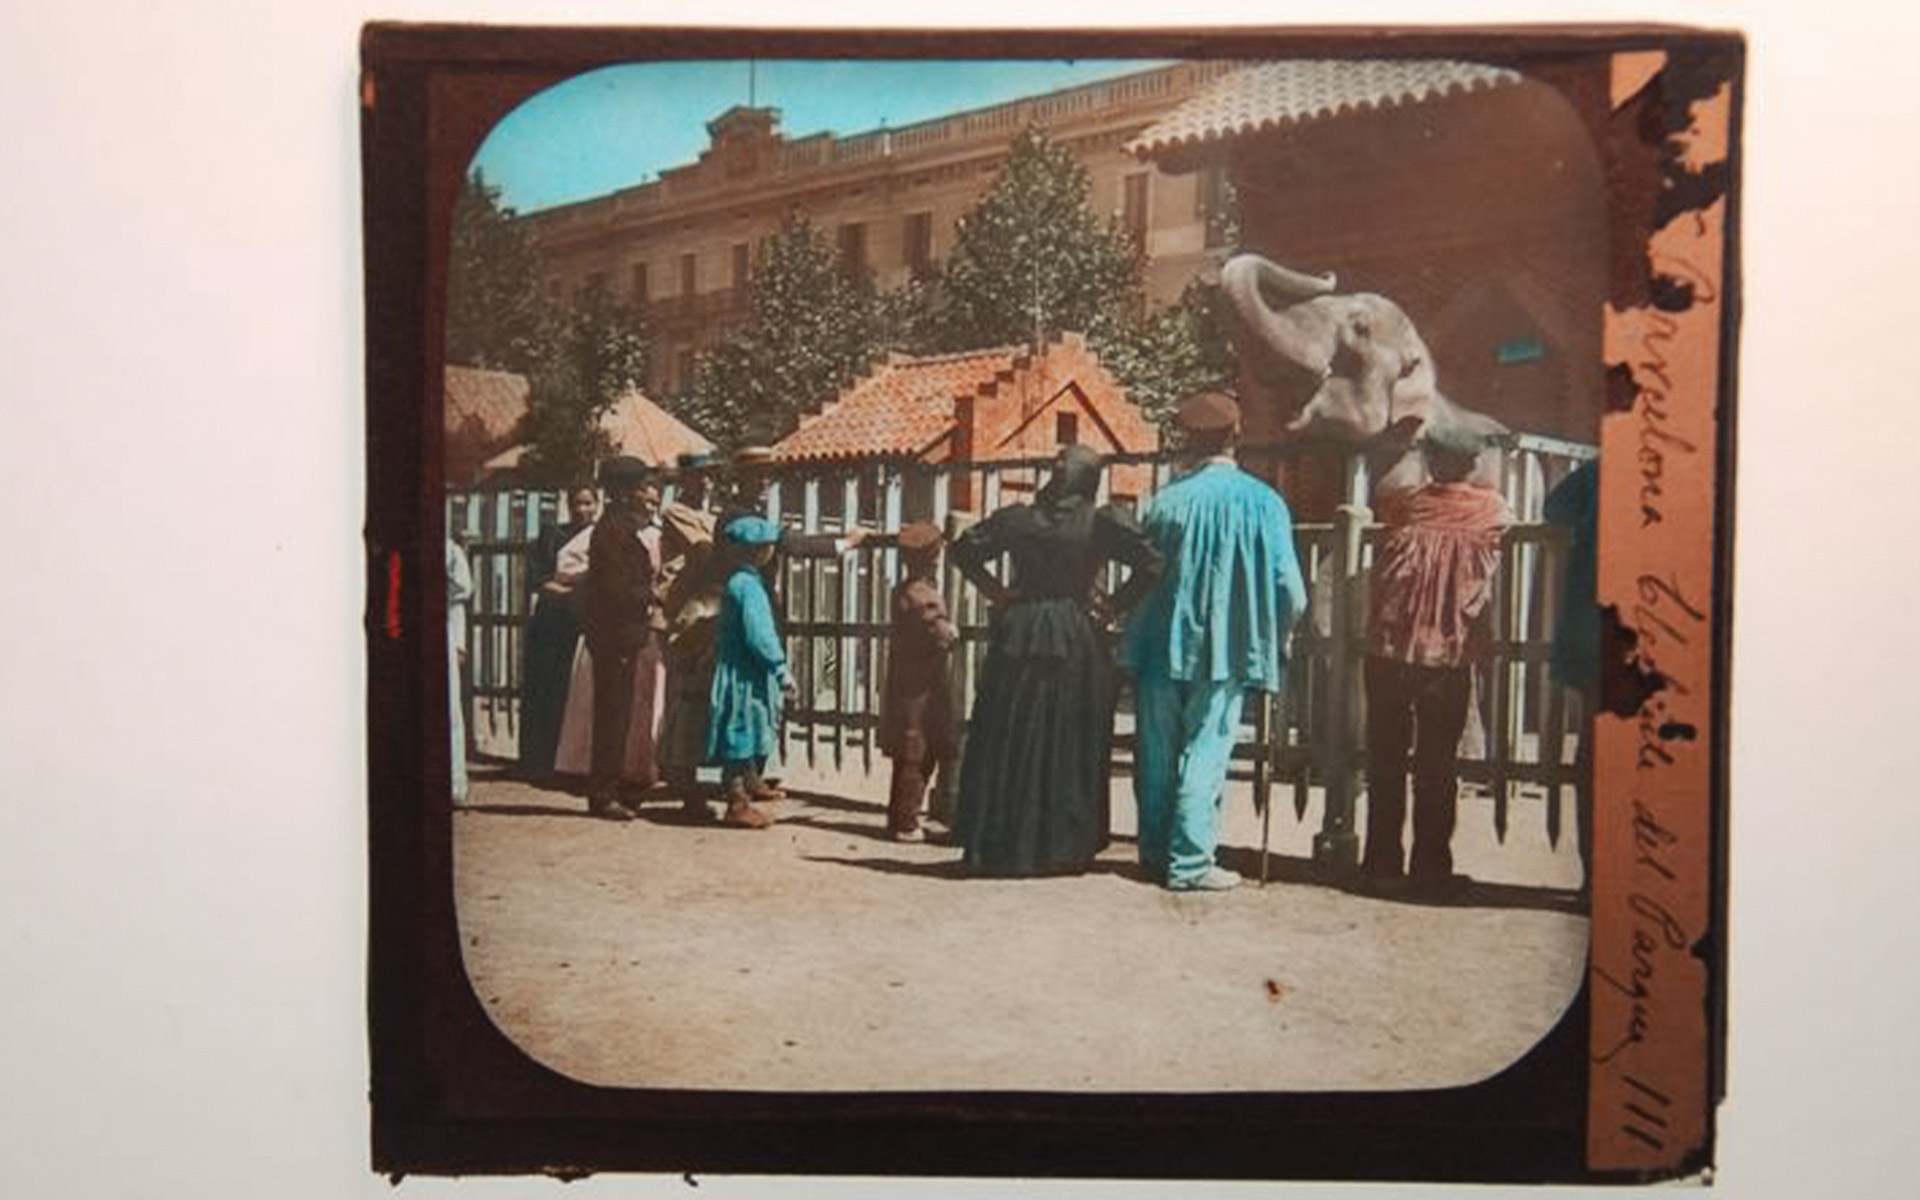 Personas mirando un elefante en zoológico de Barcelona.